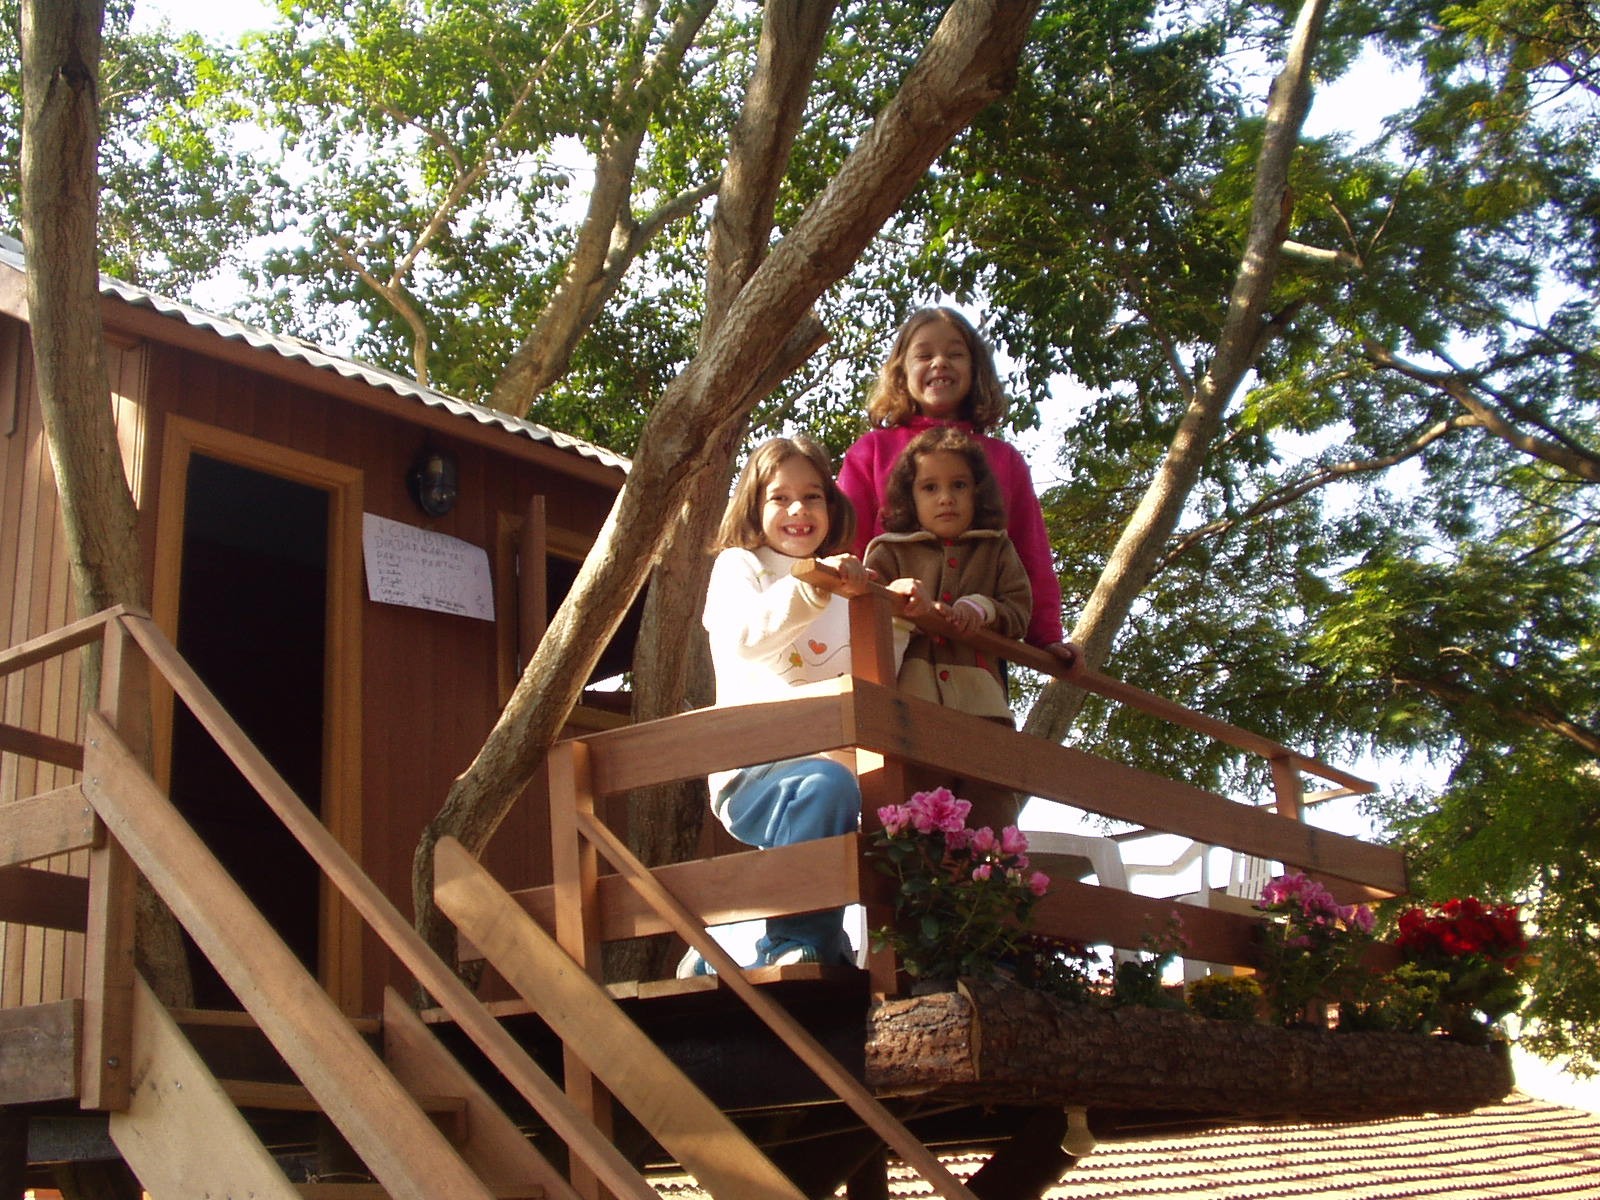 De surpresa, avós realizam sonho de netas e constroem casa na árvore inspirada em novela